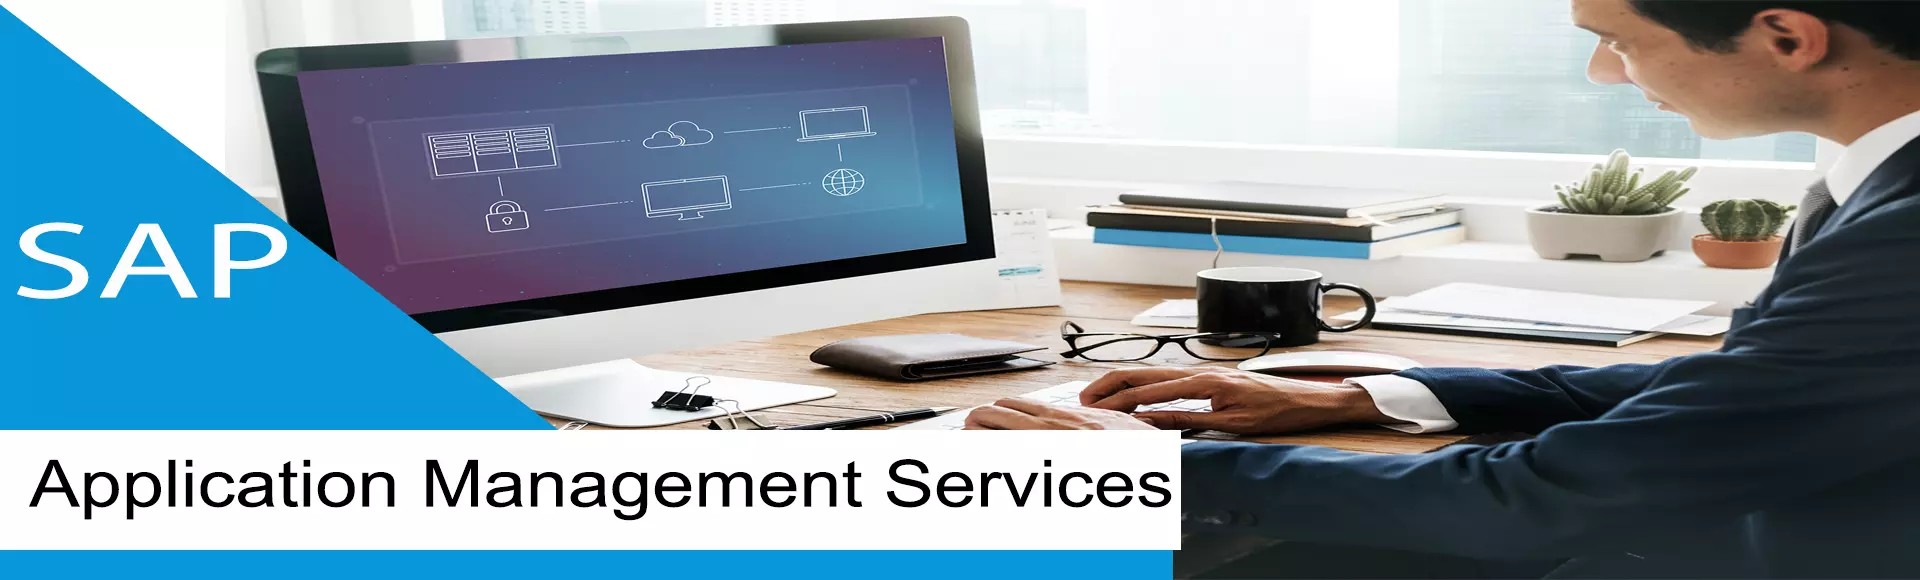 SAP Application Management Services